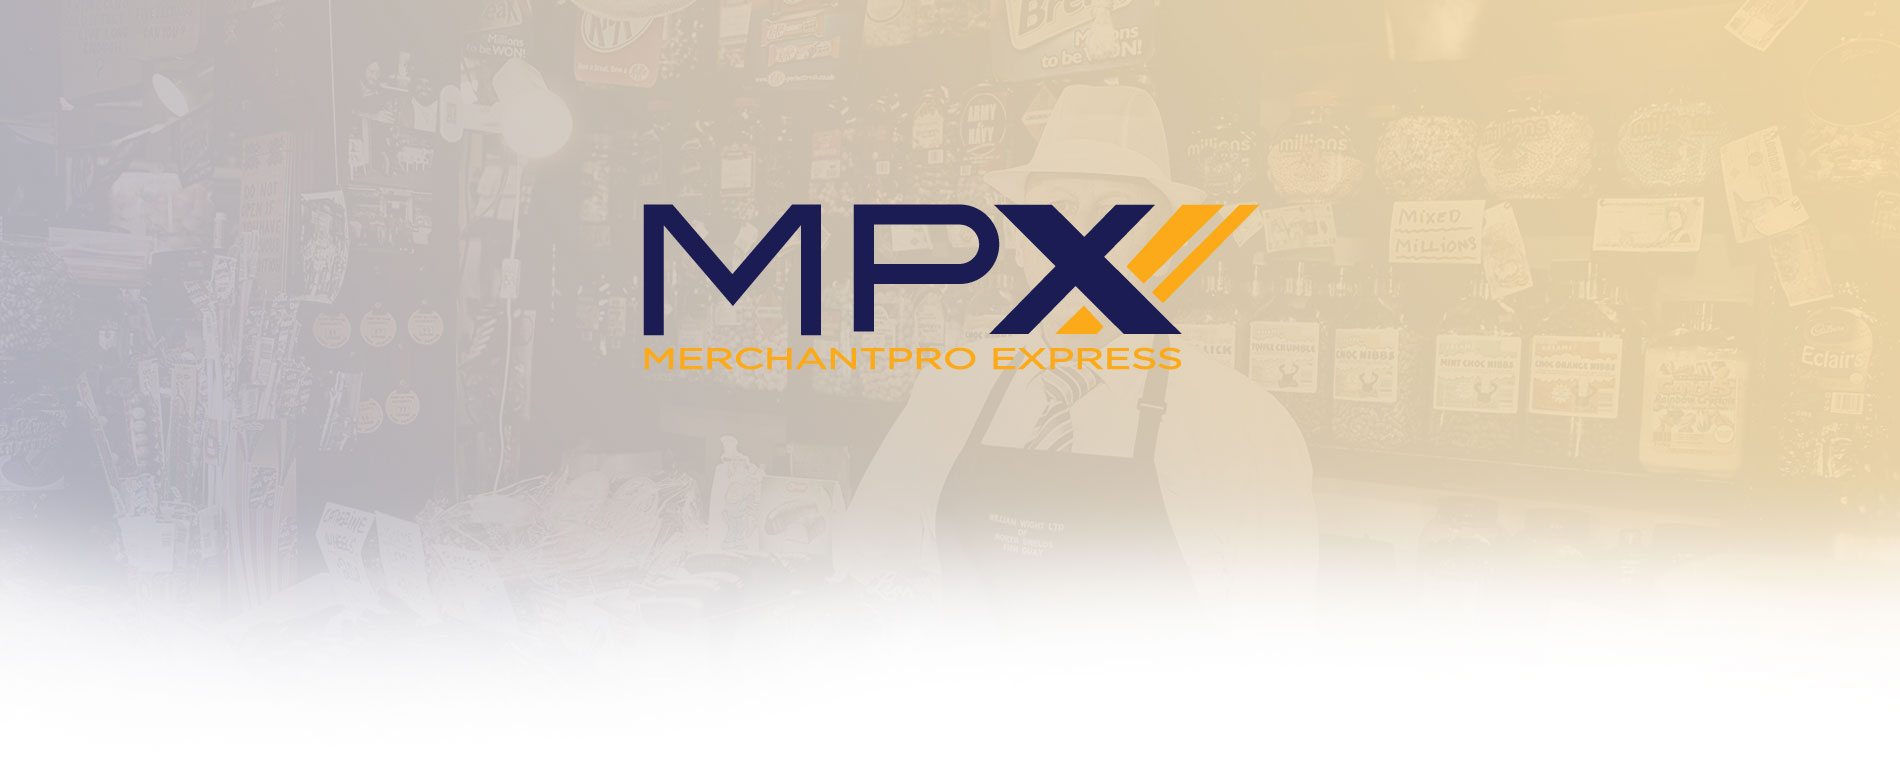 merchant-pro-express-header-sov